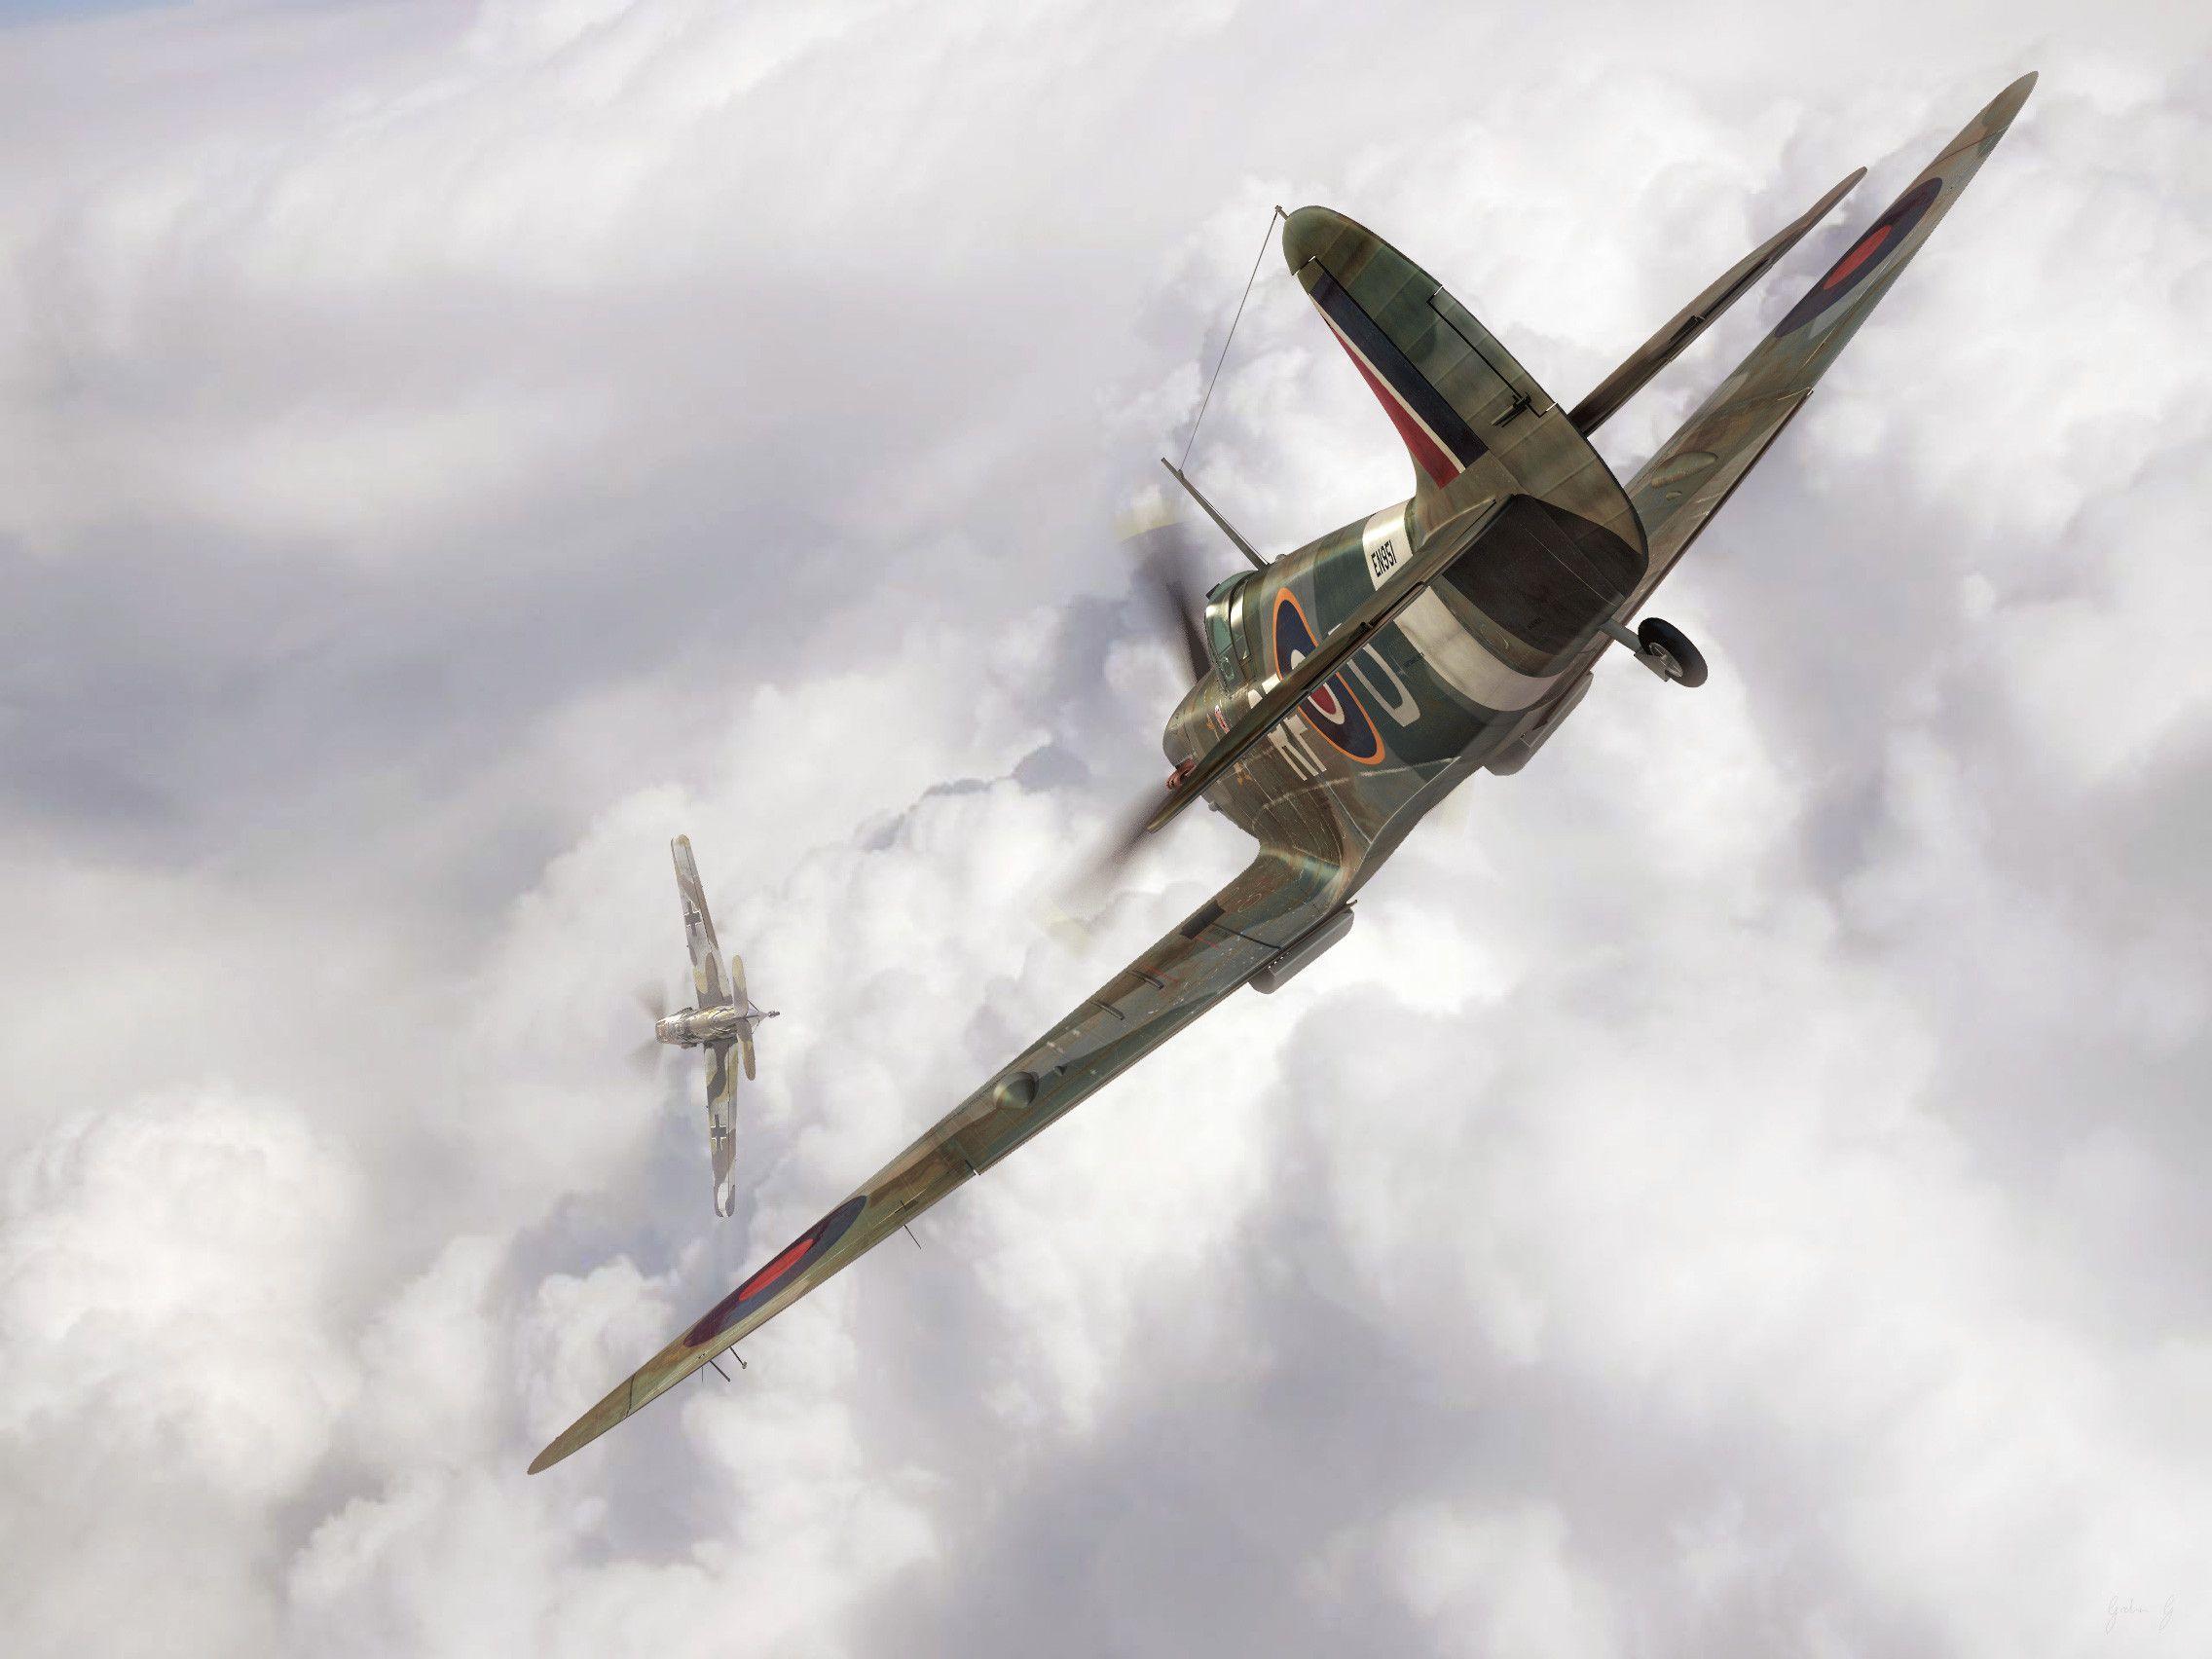 image For > Supermarine Spitfire Wallpaper